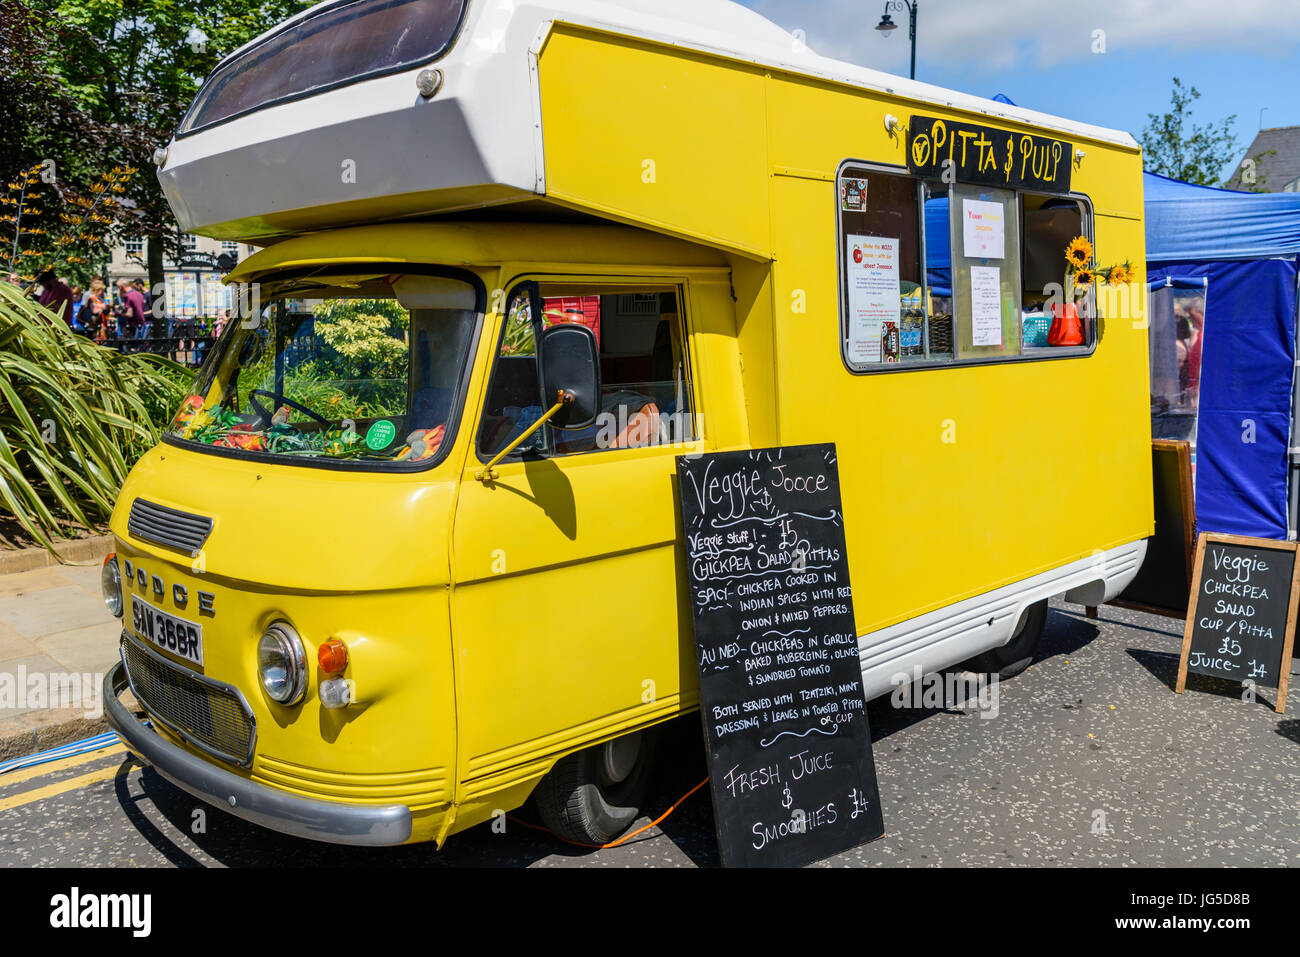 Ein mobiles catering van bietet vegetarische und vegane Speisen. Stockfoto